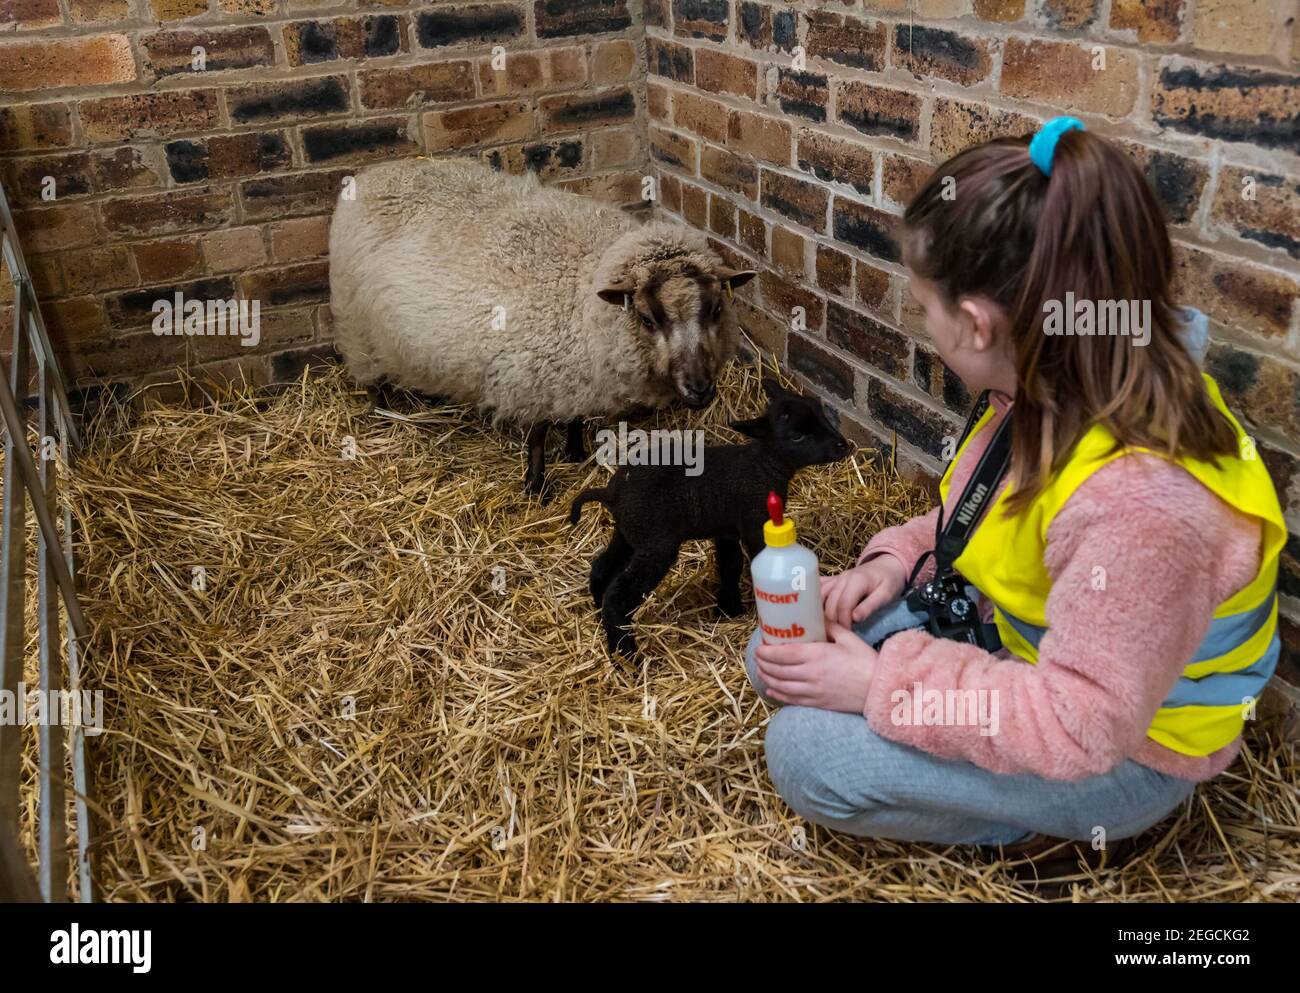 East Lothian, Schottland, Großbritannien, 18th. Februar 2021. Fütterung neugeborener Lämmer: Zoe Shepherd, ein Grundschüler im Alter von 10 Jahren, hilft Flasche Fütterung eines Shetland Schaf Lamm. Sie arbeitet an einem Heim-Schulprojekt an der Aberlady Primary School über Natur, also brachte sie ihre Kamera, um Fotos von den Lämmern zu machen Stockfoto